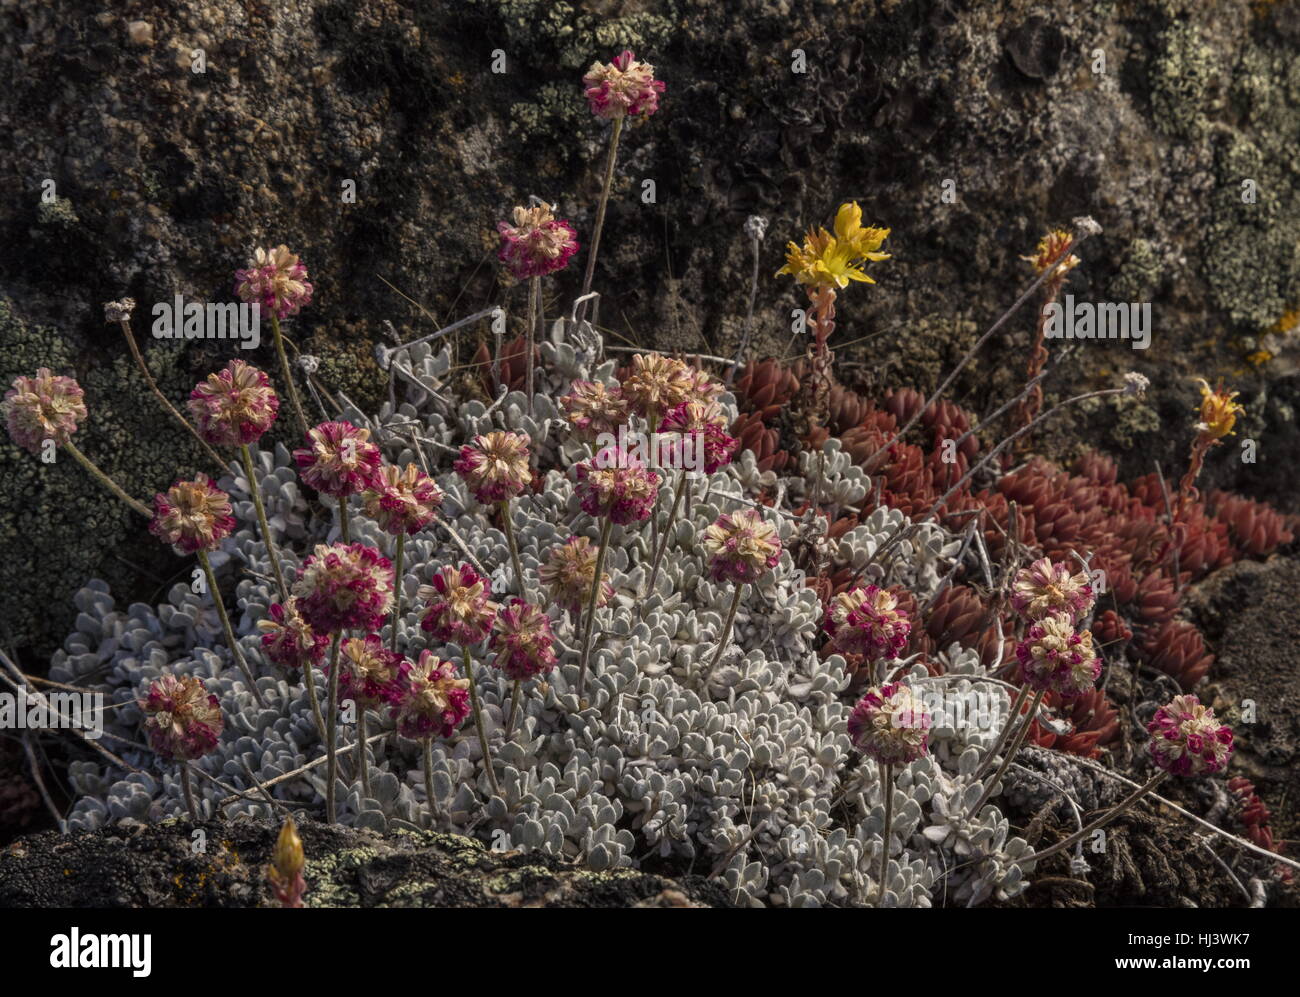 Le sarrasin, l'Eriogonum ovalifolium coussin var. nivale en fleur sur du gravier, de la Sierra Nevada. Banque D'Images